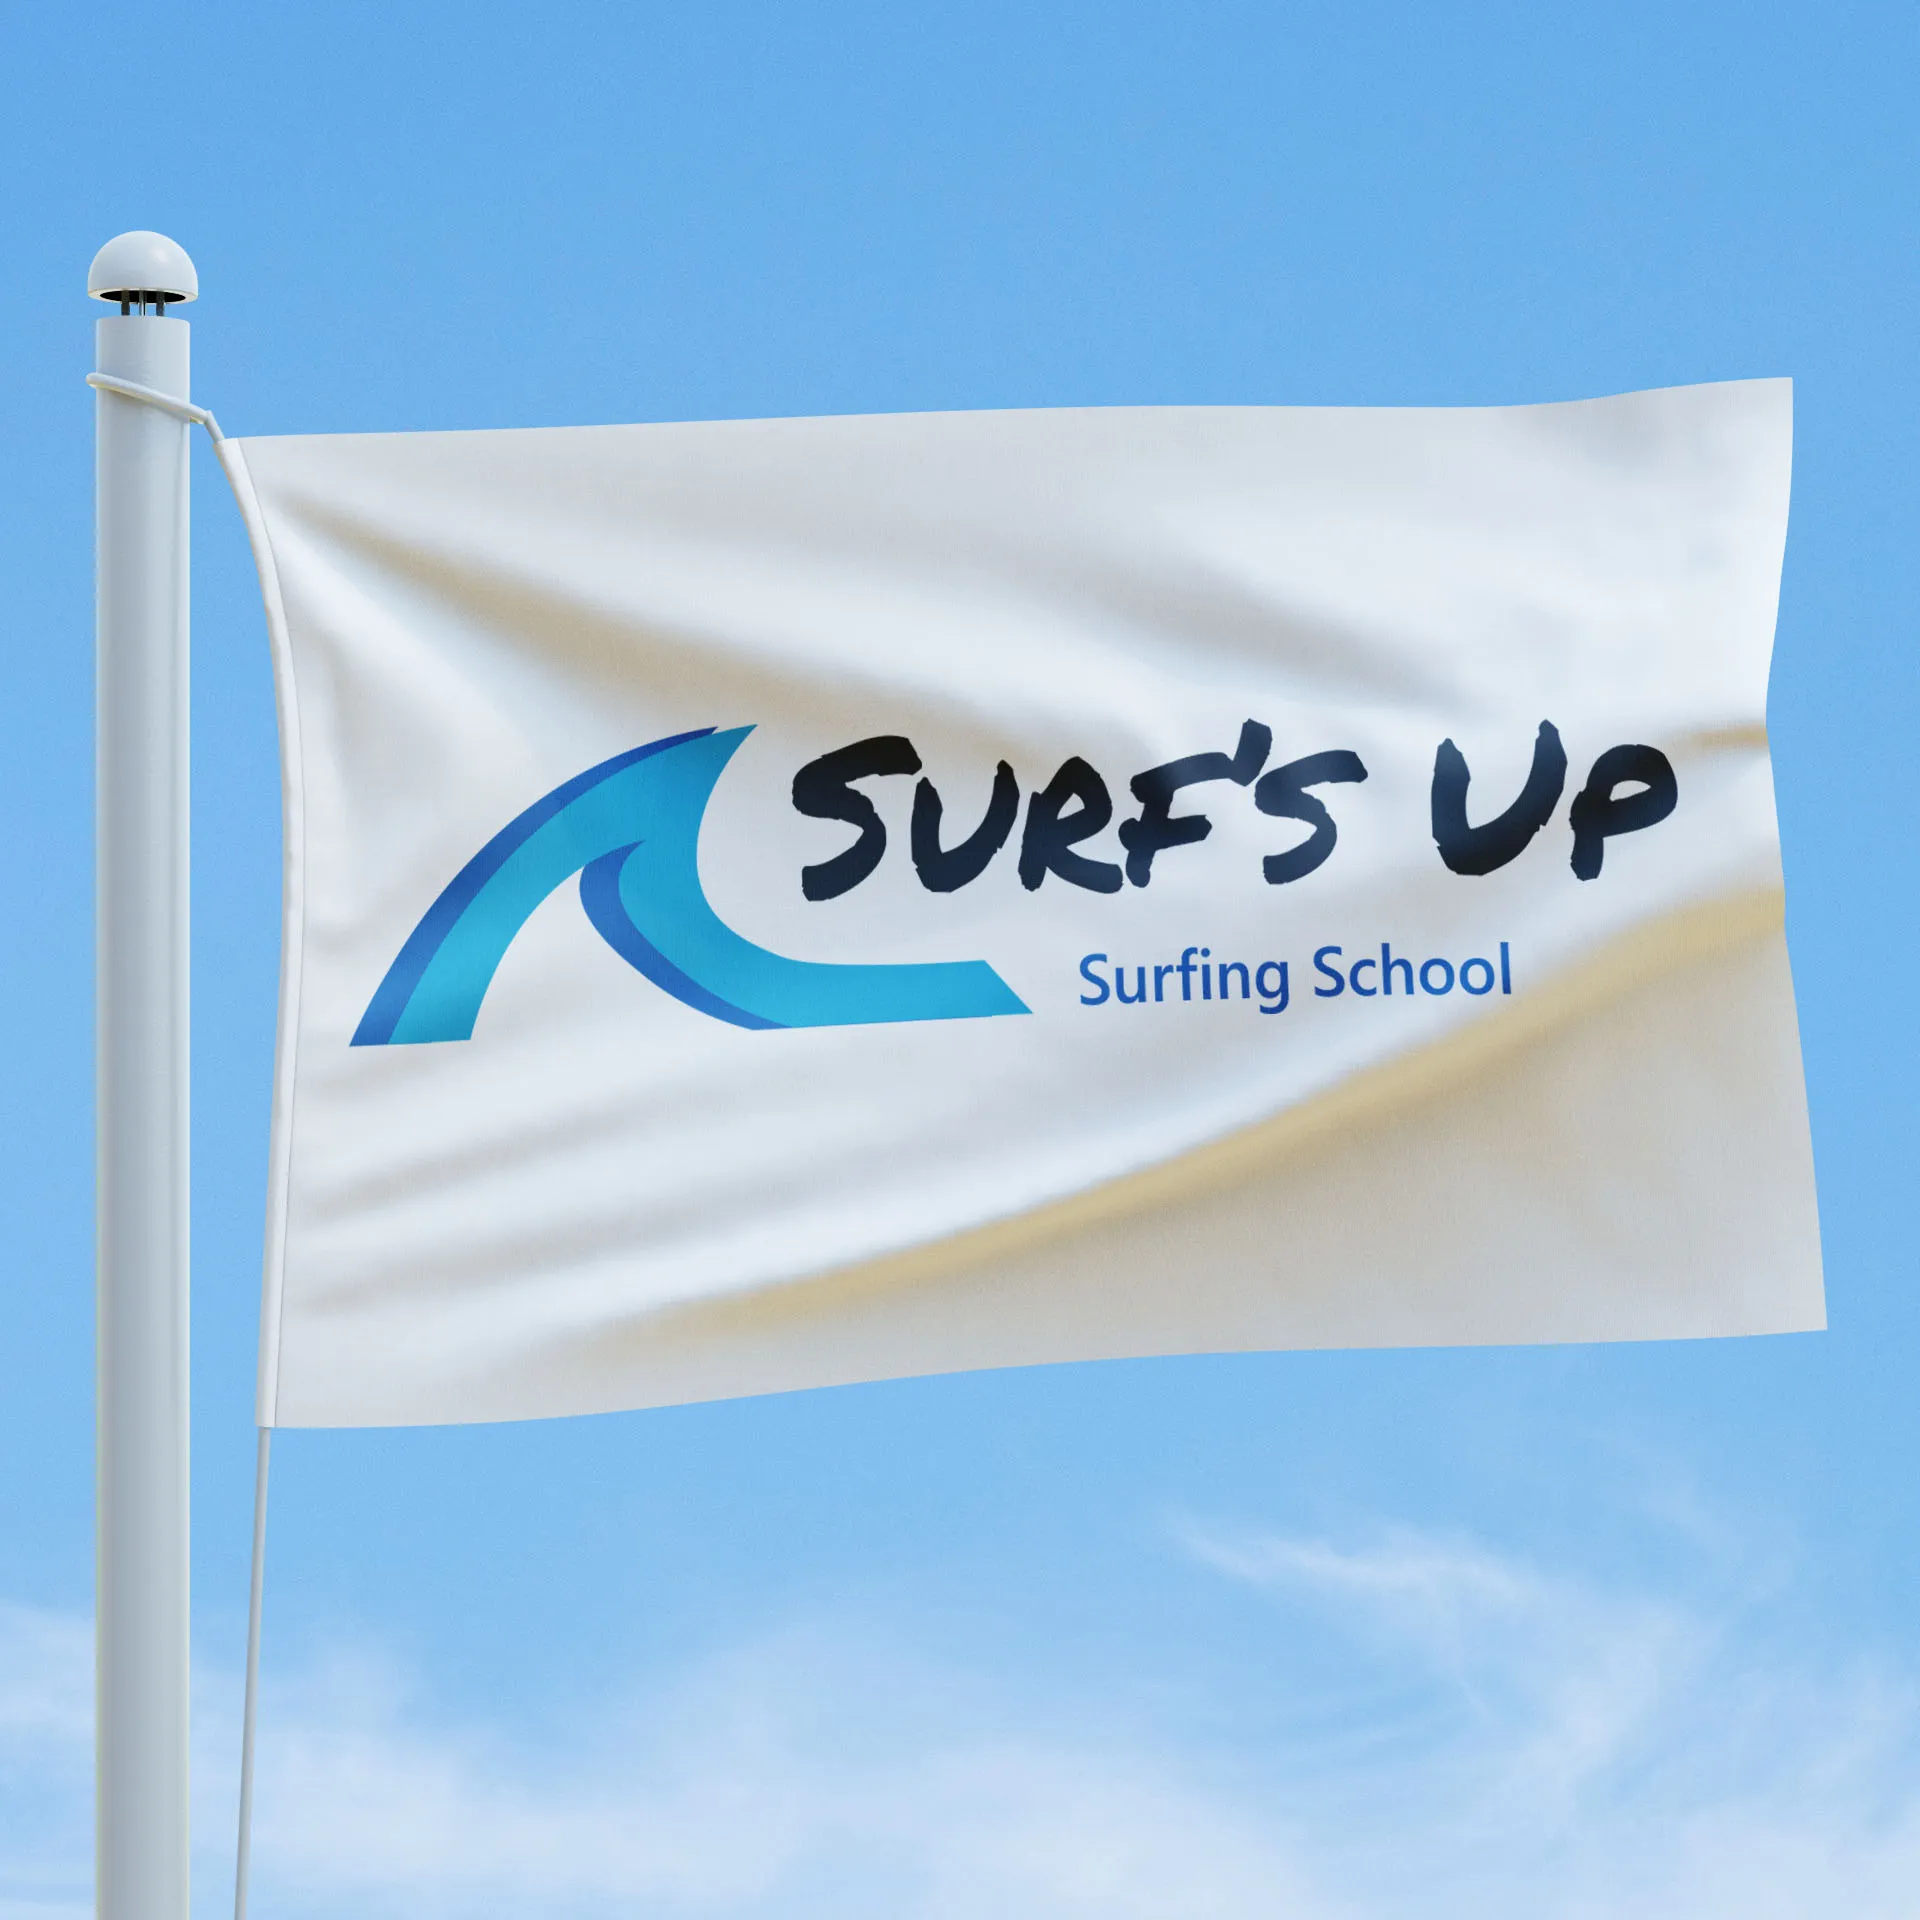 Surfs up logo design